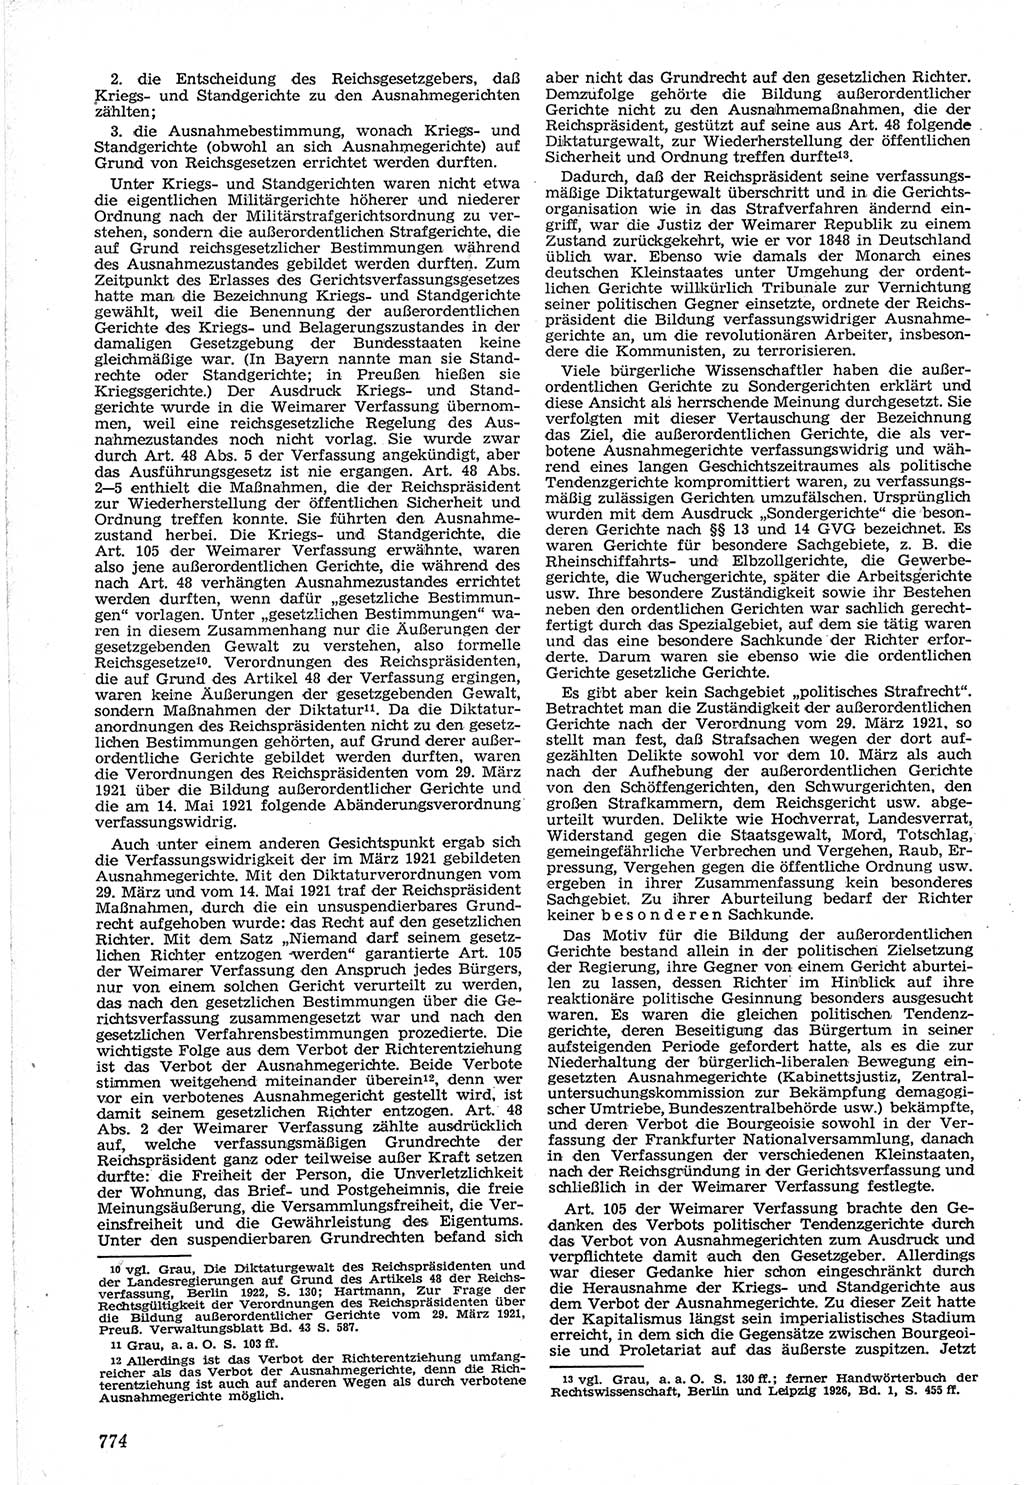 Neue Justiz (NJ), Zeitschrift für Recht und Rechtswissenschaft [Deutsche Demokratische Republik (DDR)], 12. Jahrgang 1958, Seite 774 (NJ DDR 1958, S. 774)